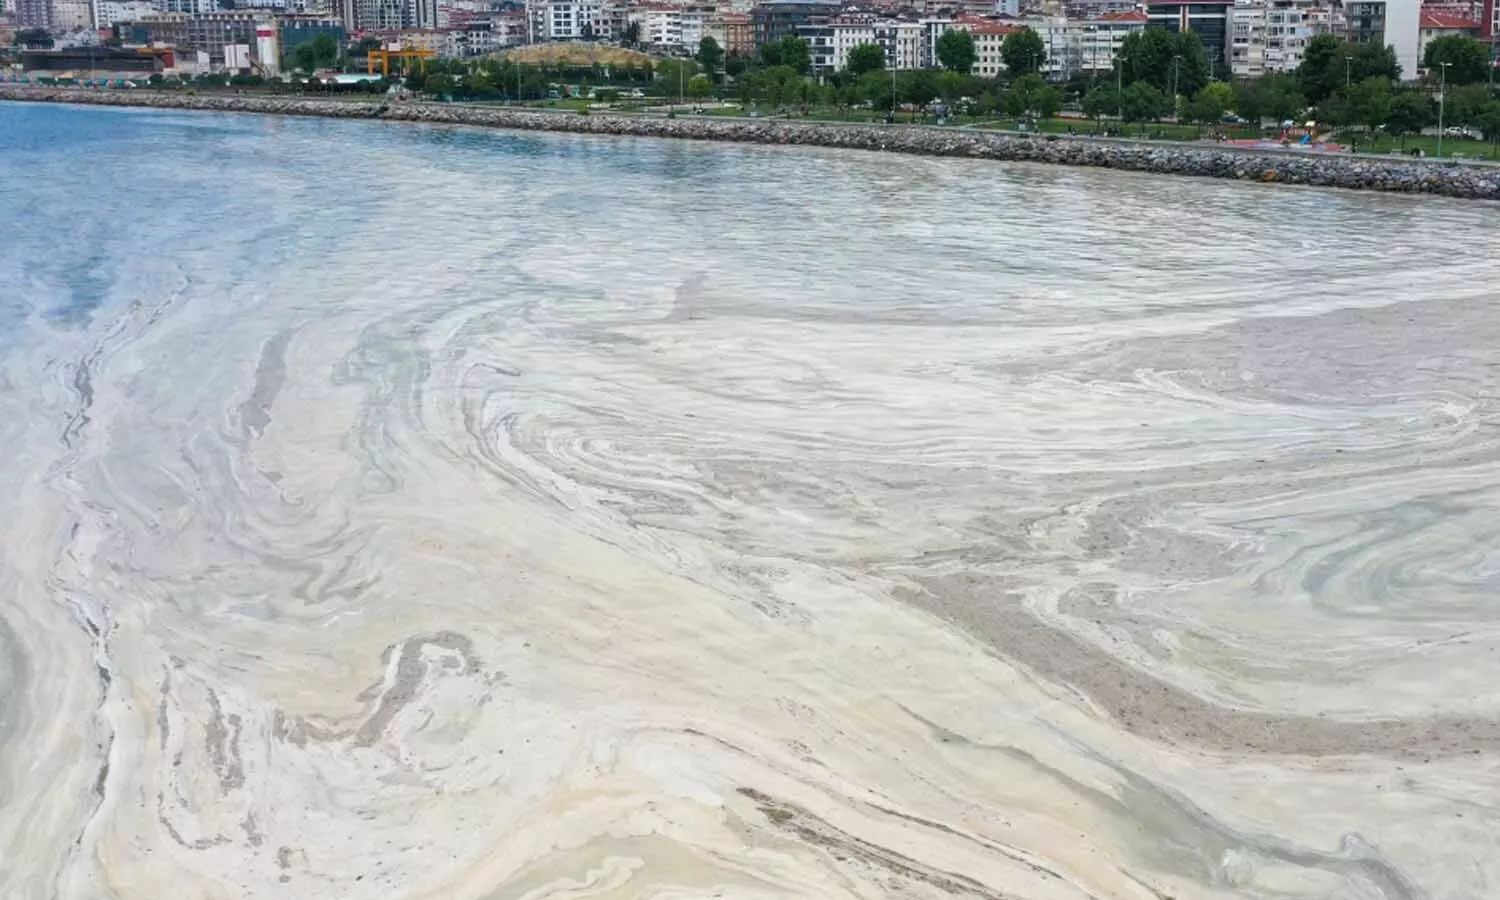 तुर्की में समुद्री थूक की सुनामी, देश की बढ़ी चिंता, कई समुद्री जीवों की मौत